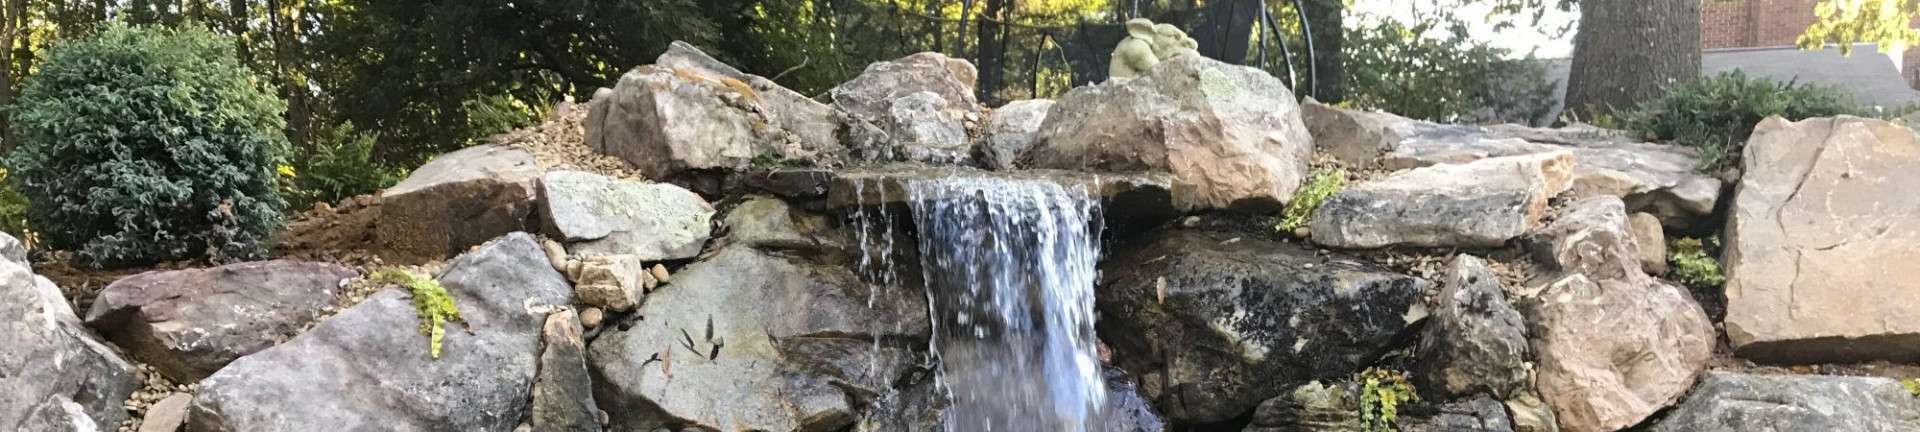 Personalized Waterfall